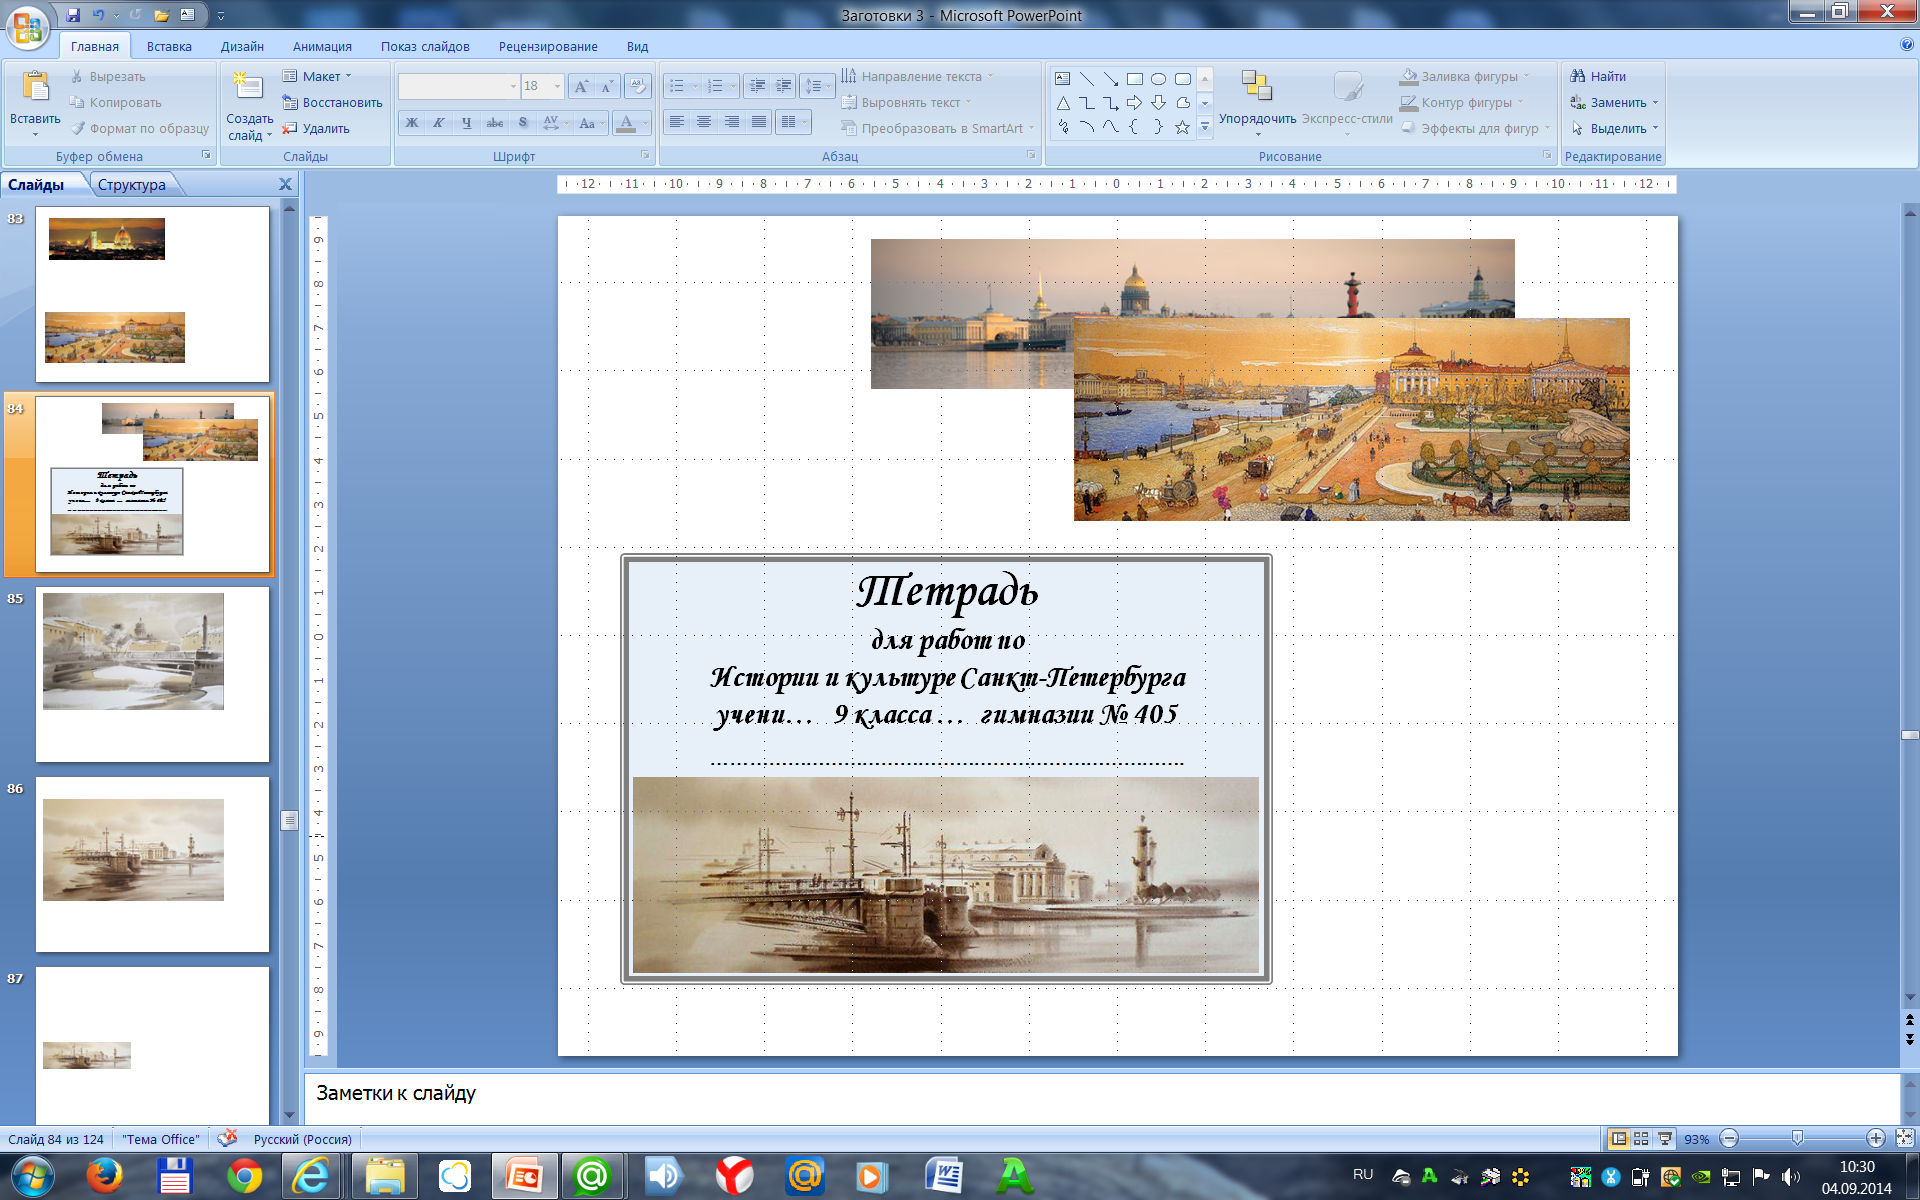 Наклейки для обложек ученических тетрадей по истории и культуре Санкт-Петербурга (8 – 9 класс)